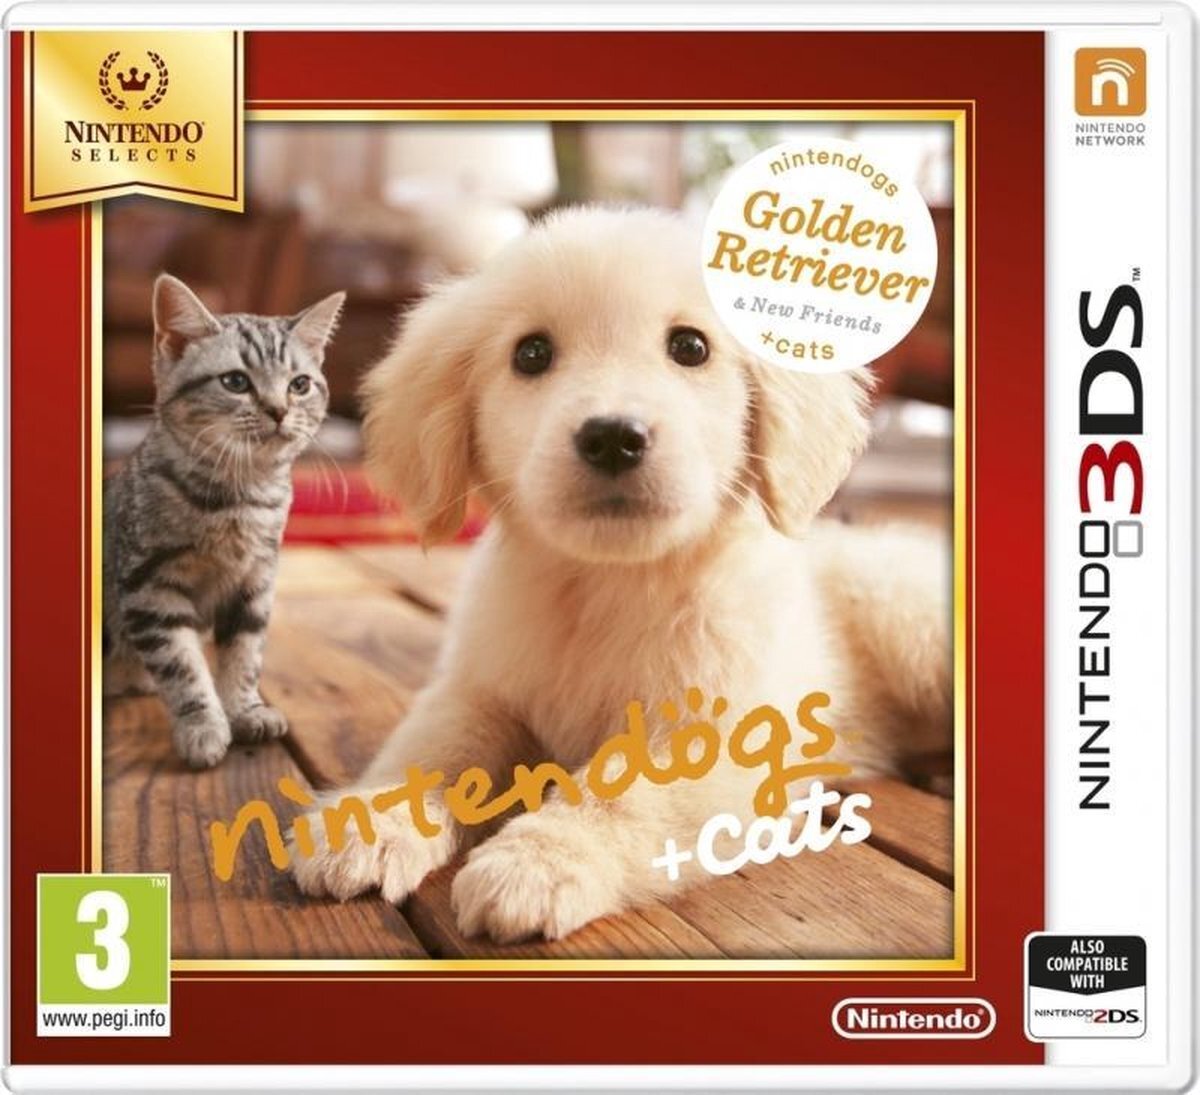 Nintendo Nintendogs + Cats: Golden Retriever + New Friends (3DS/2DS) Nintendo 3DS